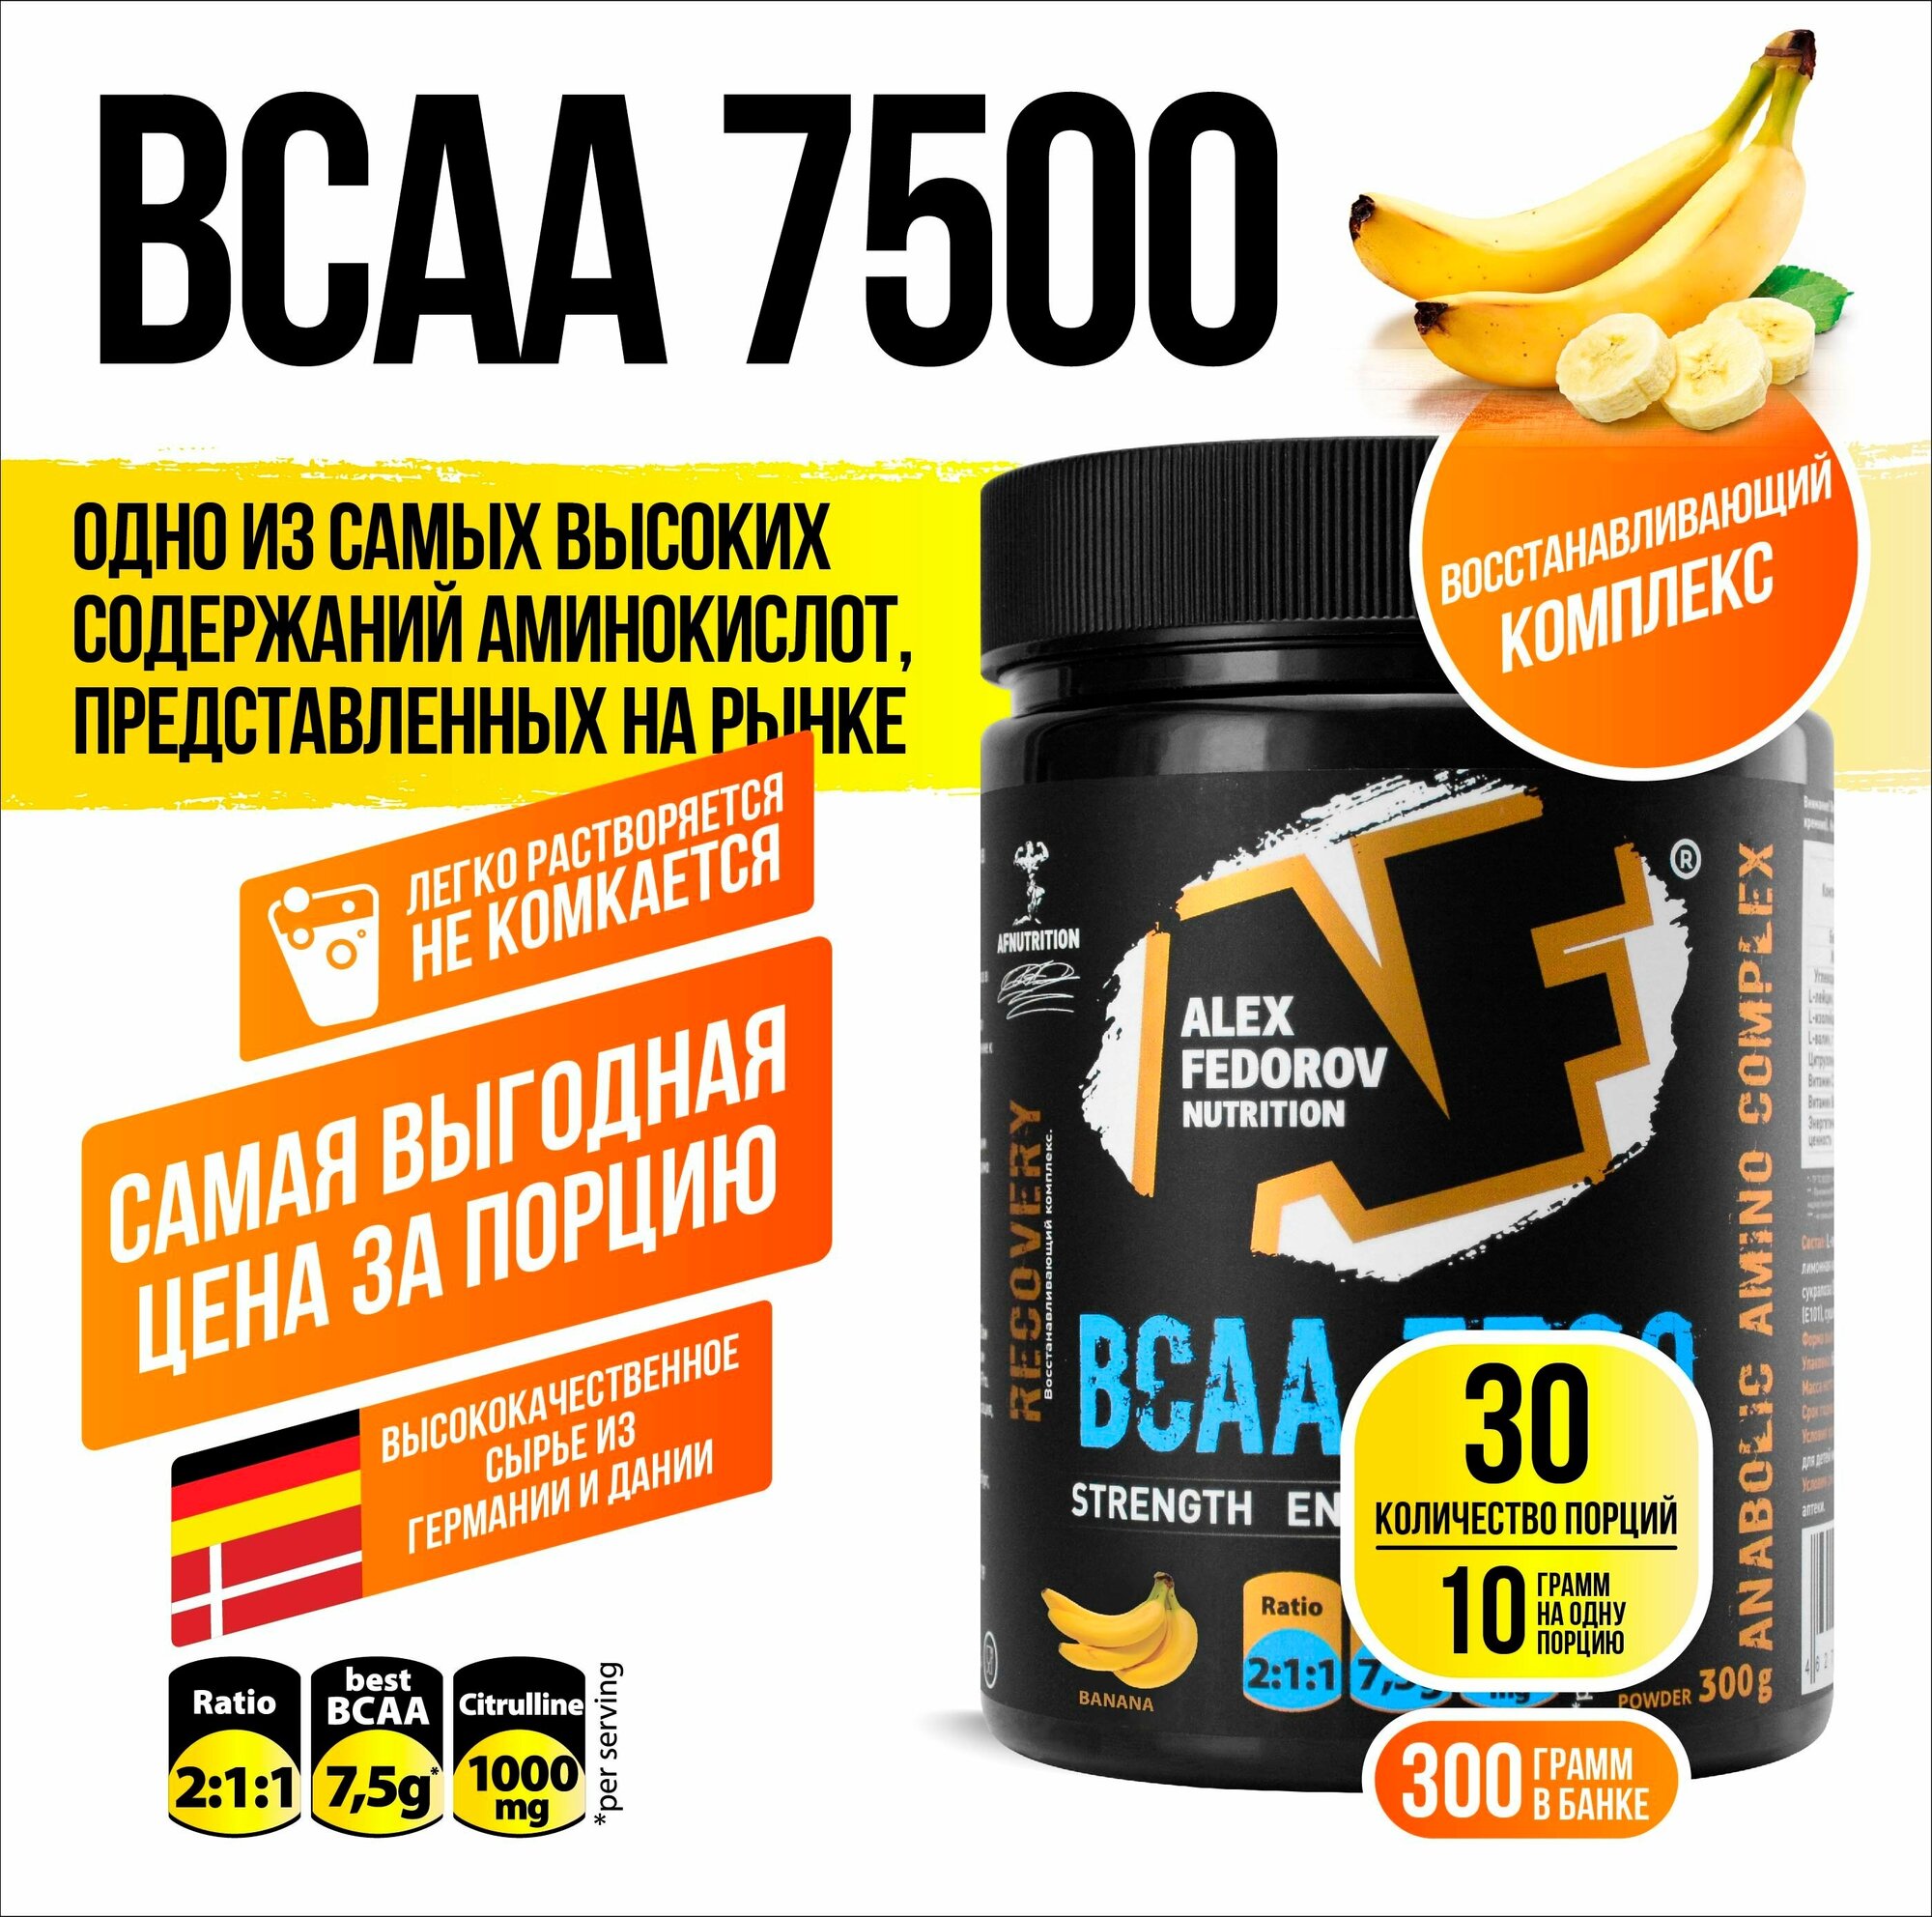 BCAA Alex Fedorov Nutrition BCAA 7500, банан, 300 гр.